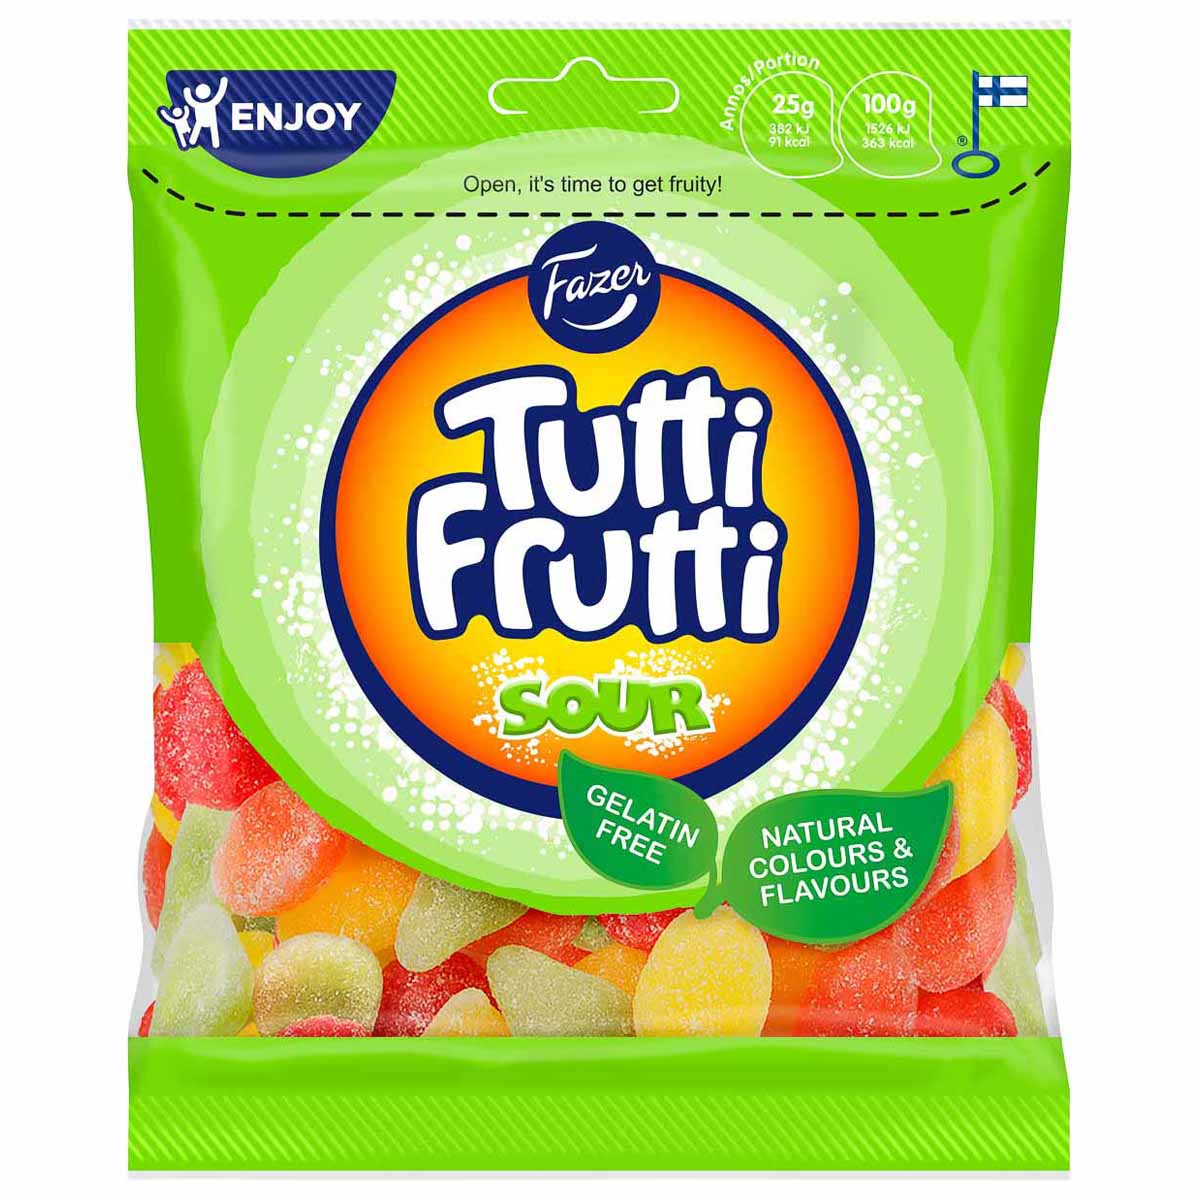 Godispåse, Tutti frutti sour 120 g